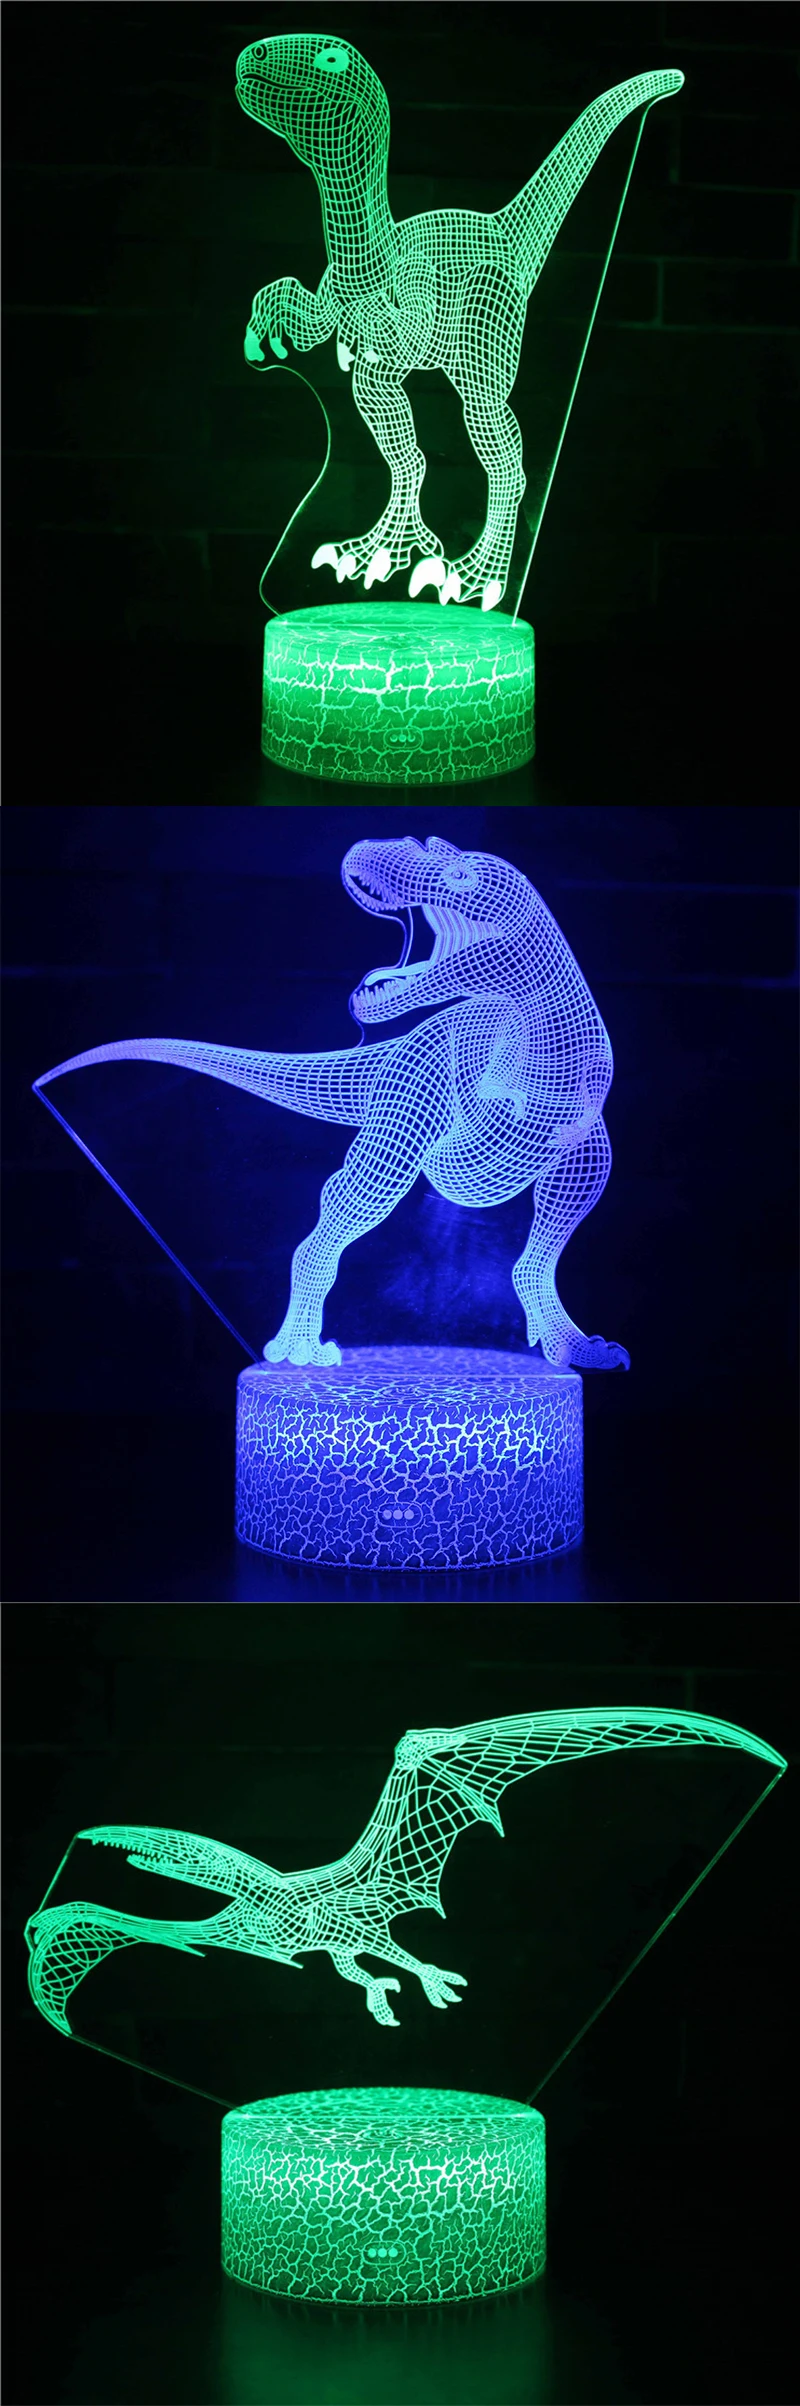 Динозавр 3D Светодиодная лампа с эффектом иллюзии 3D Оптическая иллюзия лампы 7 цветов многоцветный ed USB домашнее украшение цветная сменная лампа для мальчиков